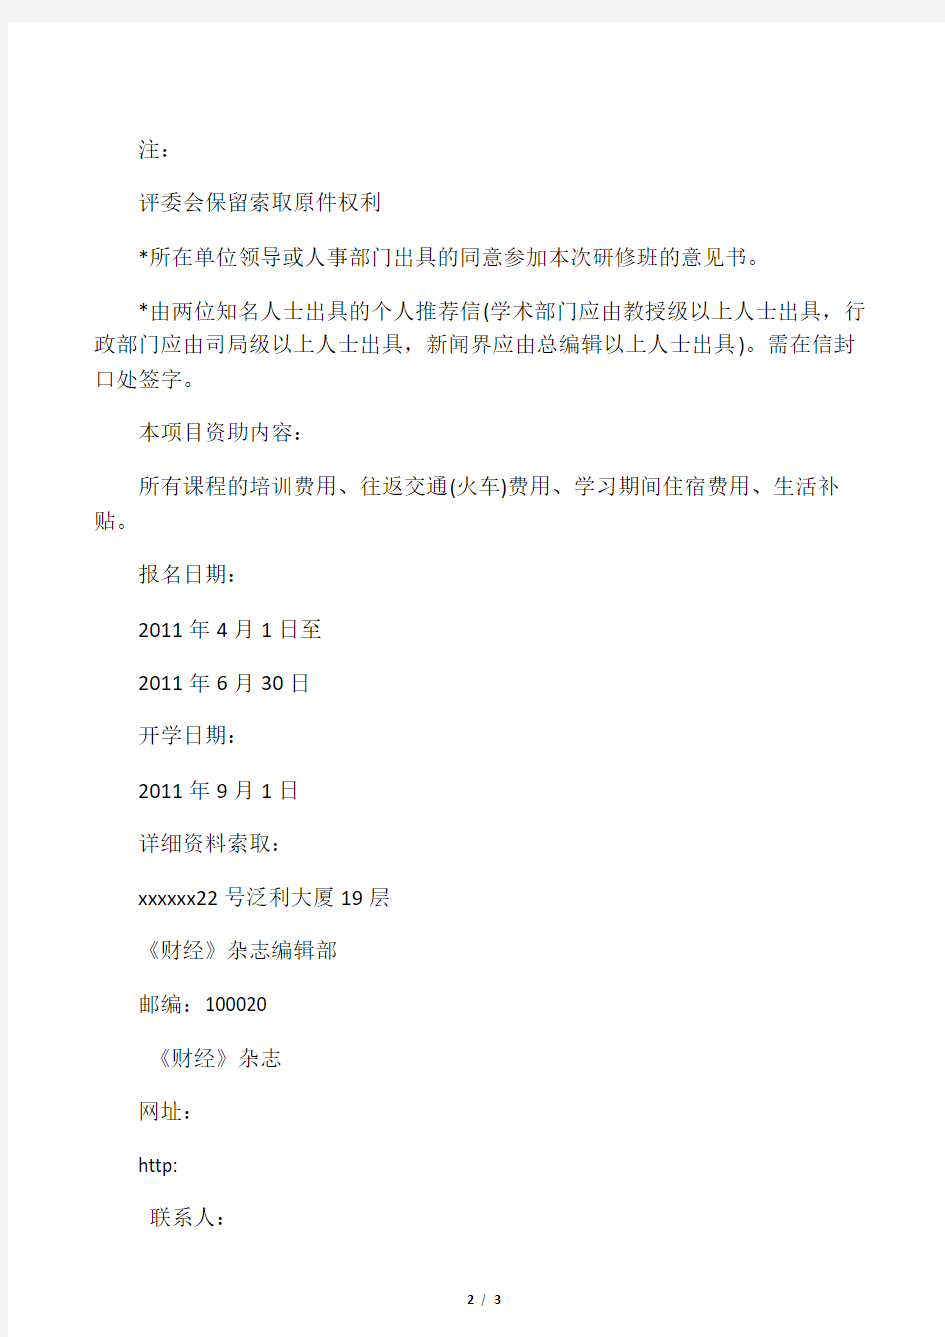 北京大学中国经济研究中心第五届《财经》杂志奖学金项目申请细则